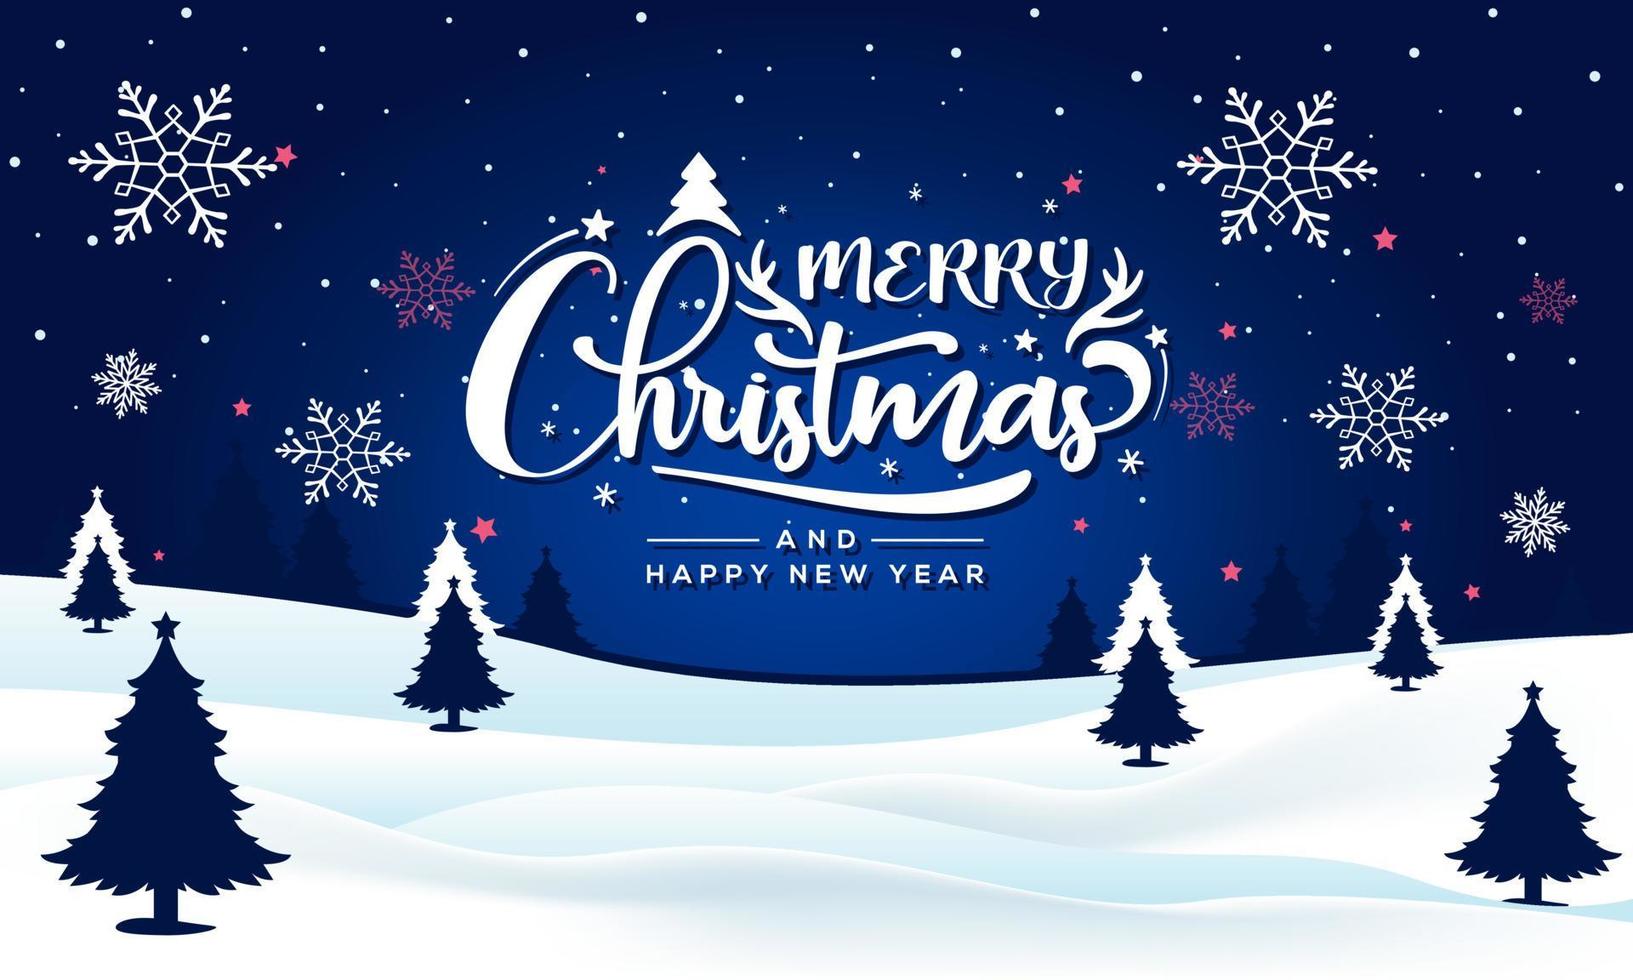 vrolijk kerstfeest en nieuwjaar typografie op glanzende xmas achtergrond met winterlandschap met sneeuwvlokken, licht, sterren. vrolijke kerstkaart. vector